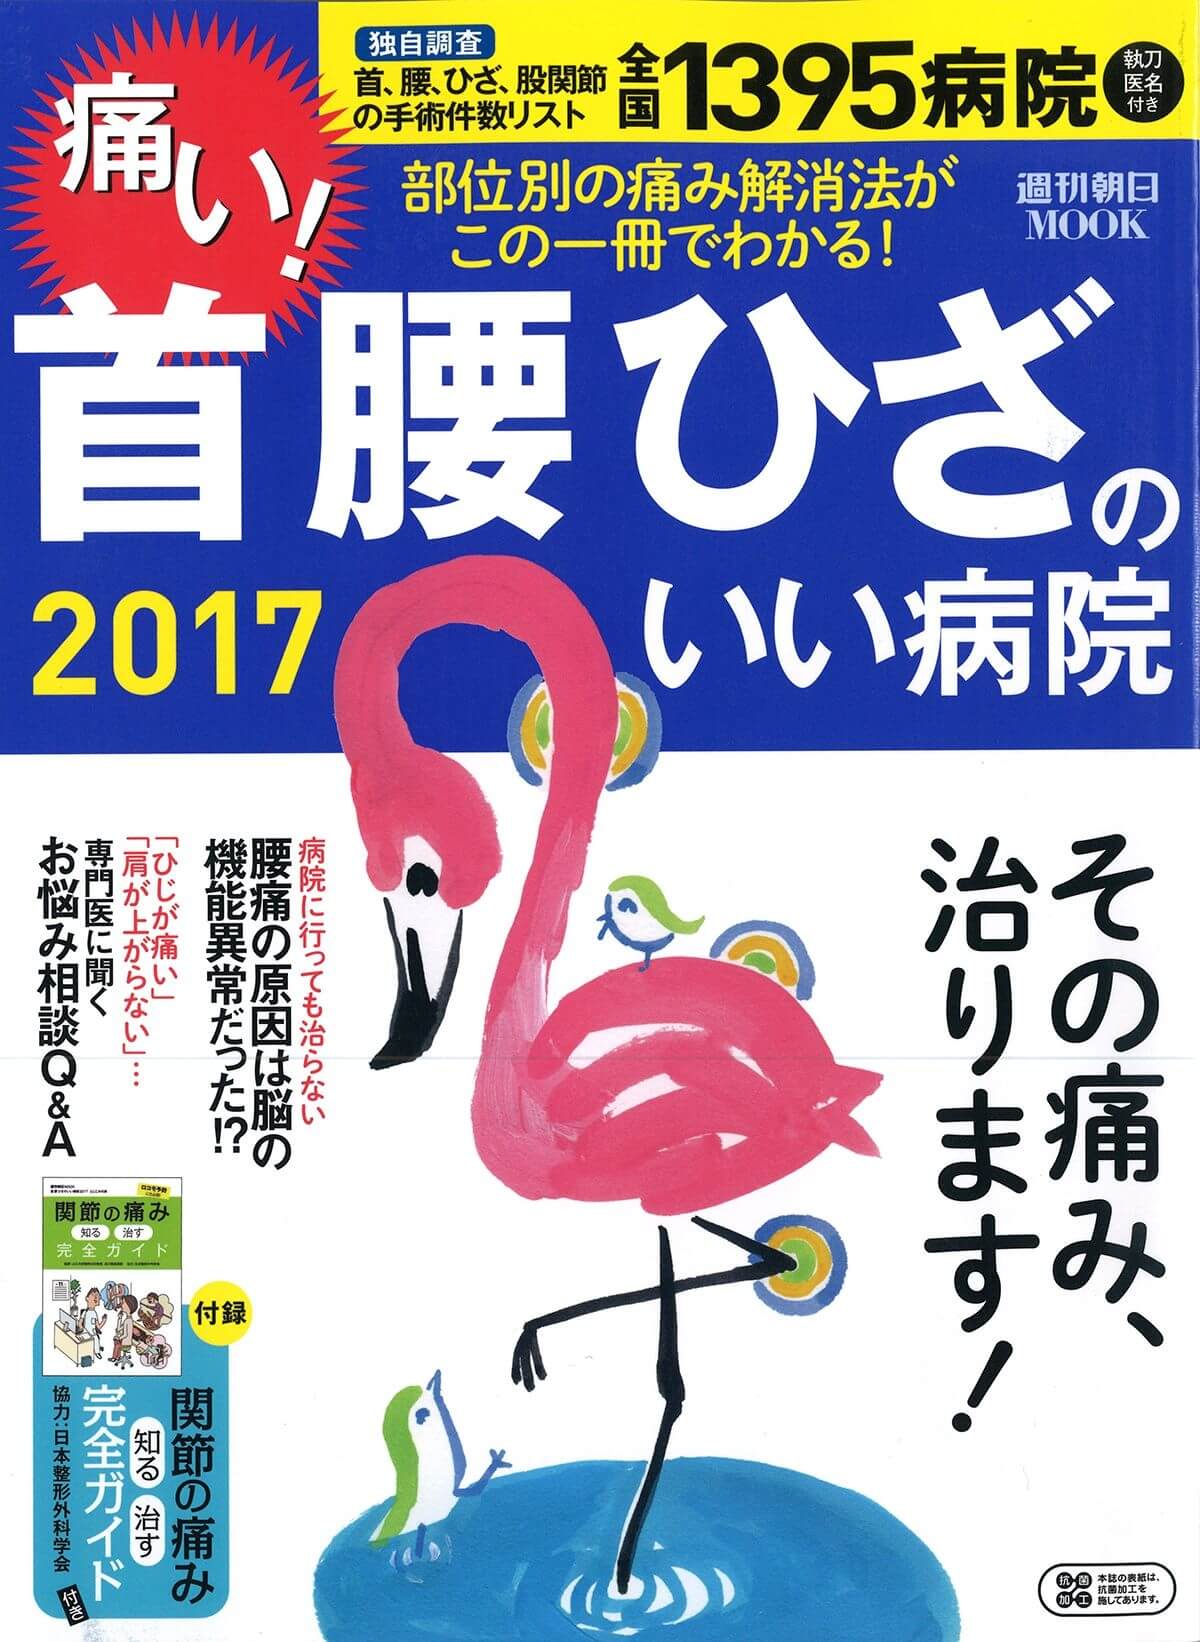 週刊朝日MOOK 首腰ひざのいい病院2016 表紙